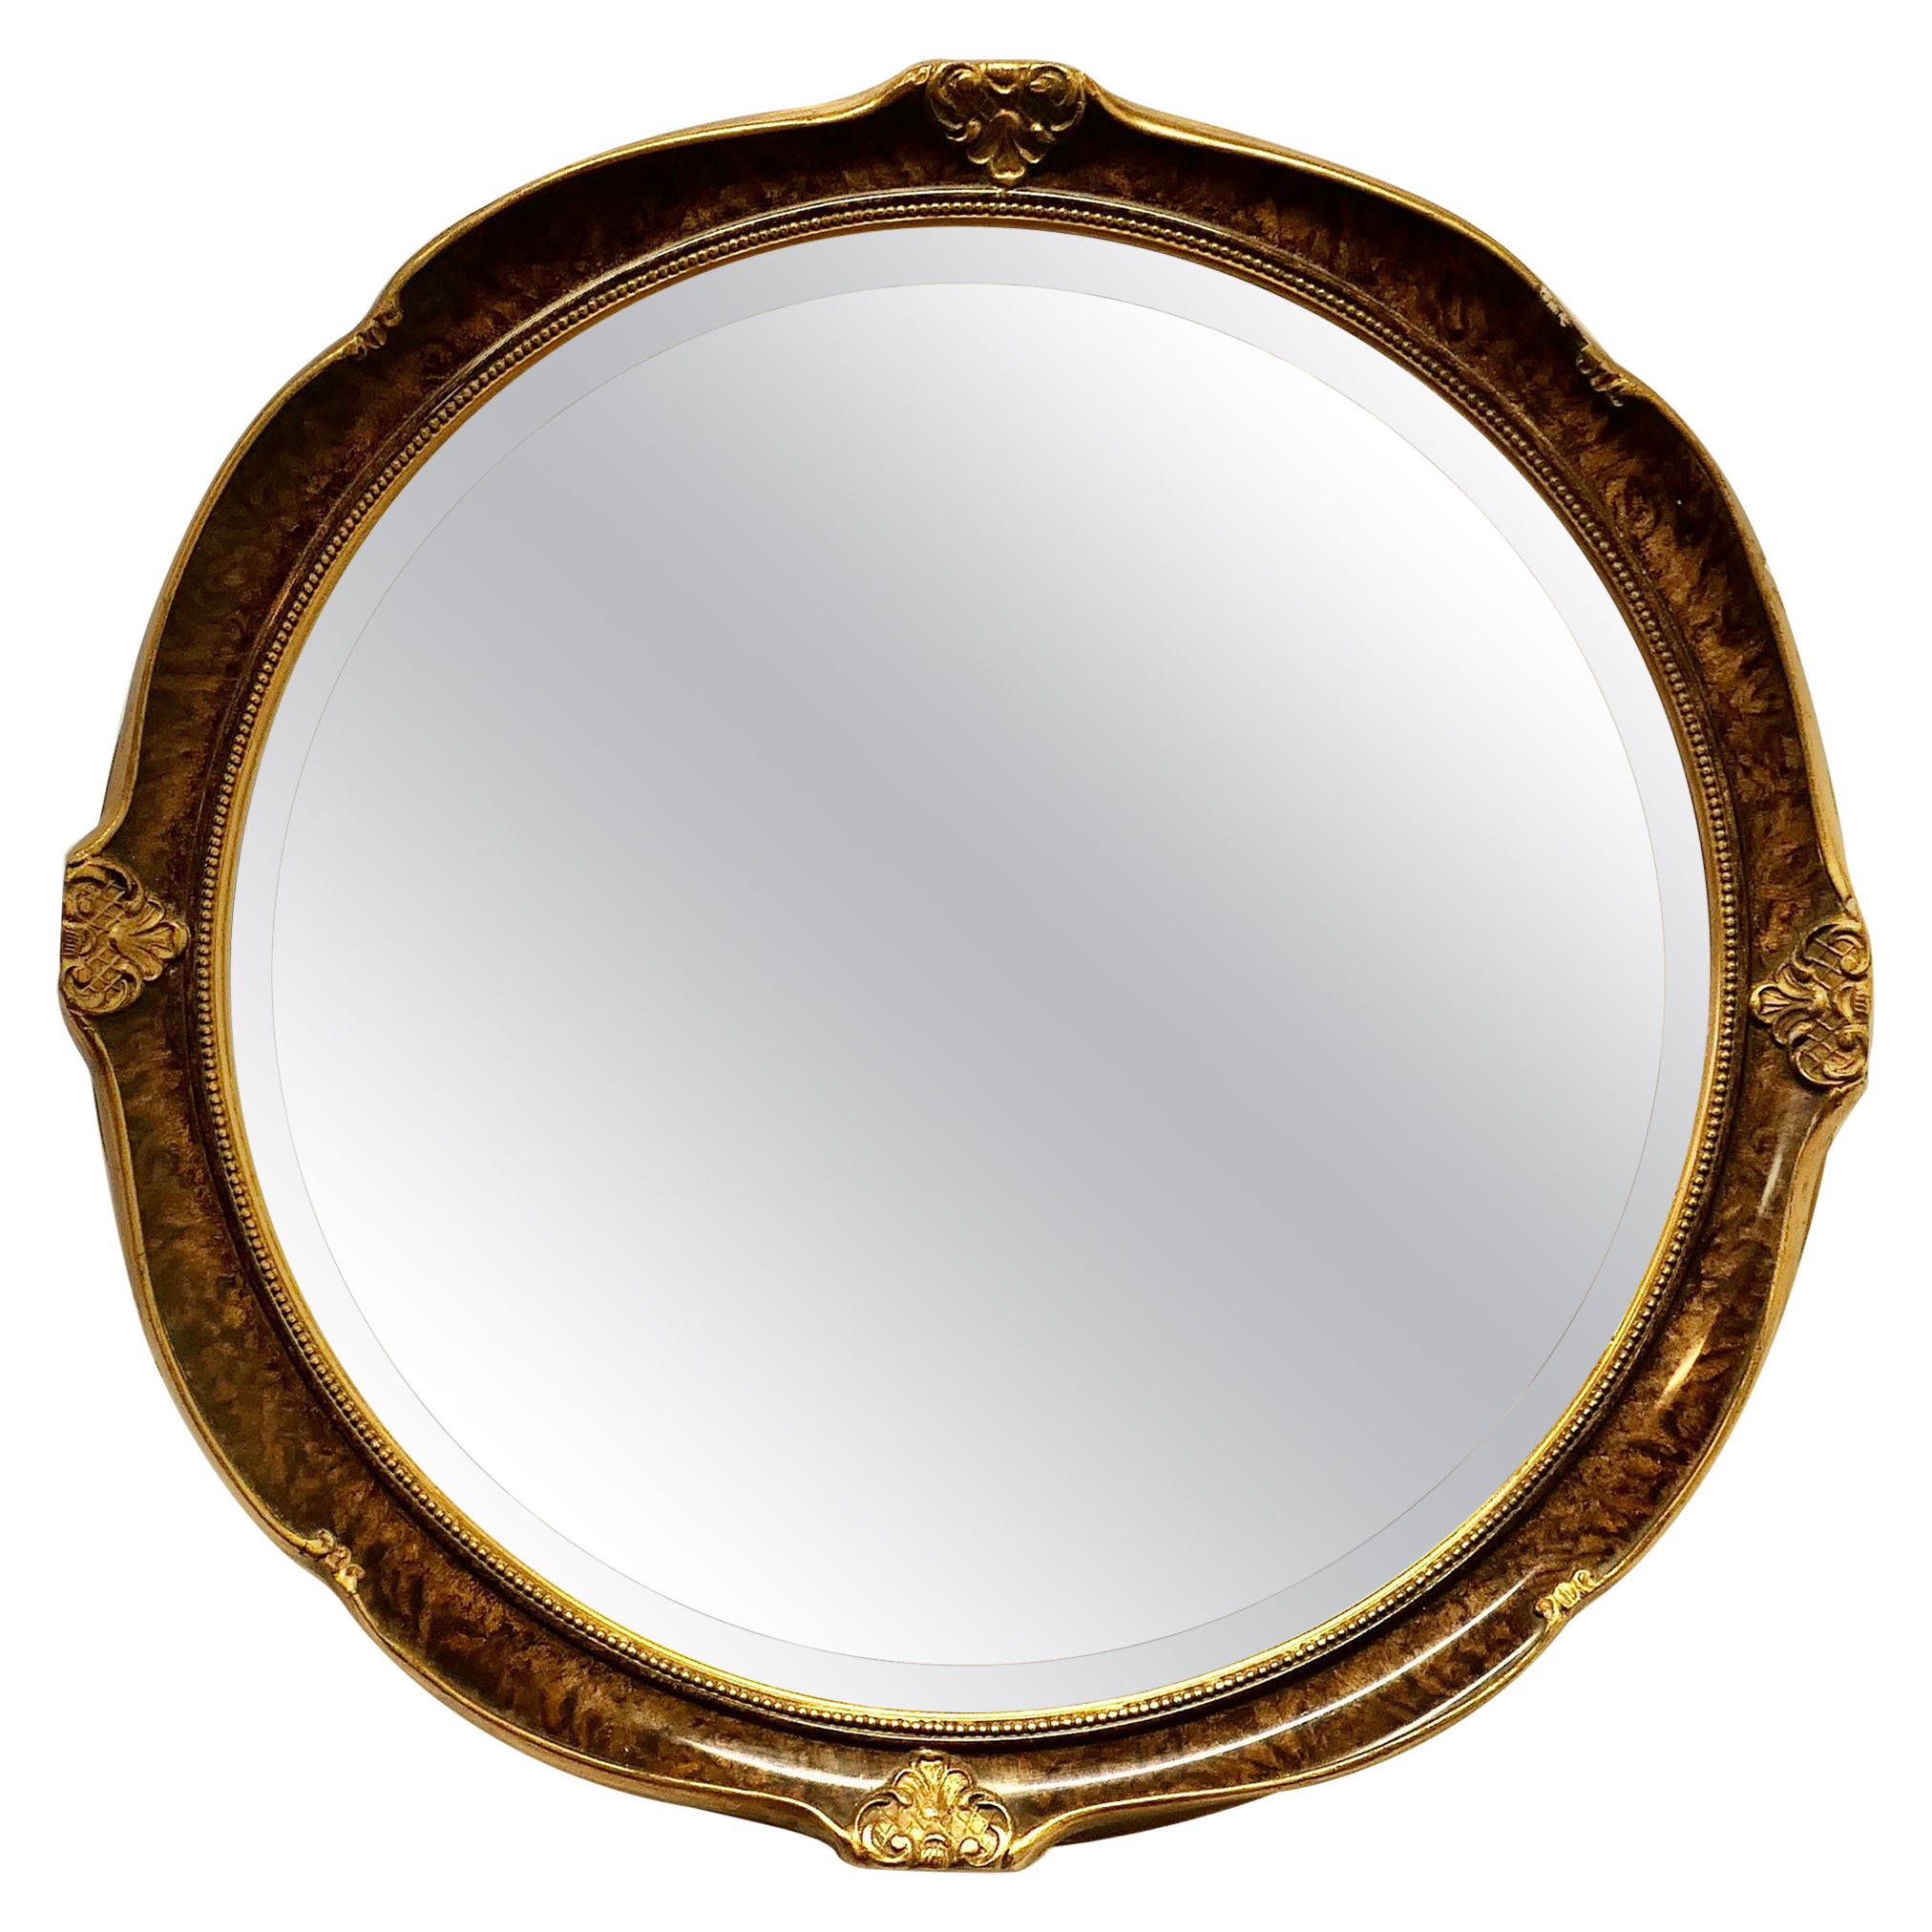 Ovaler Spiegel in Krümeloptik   